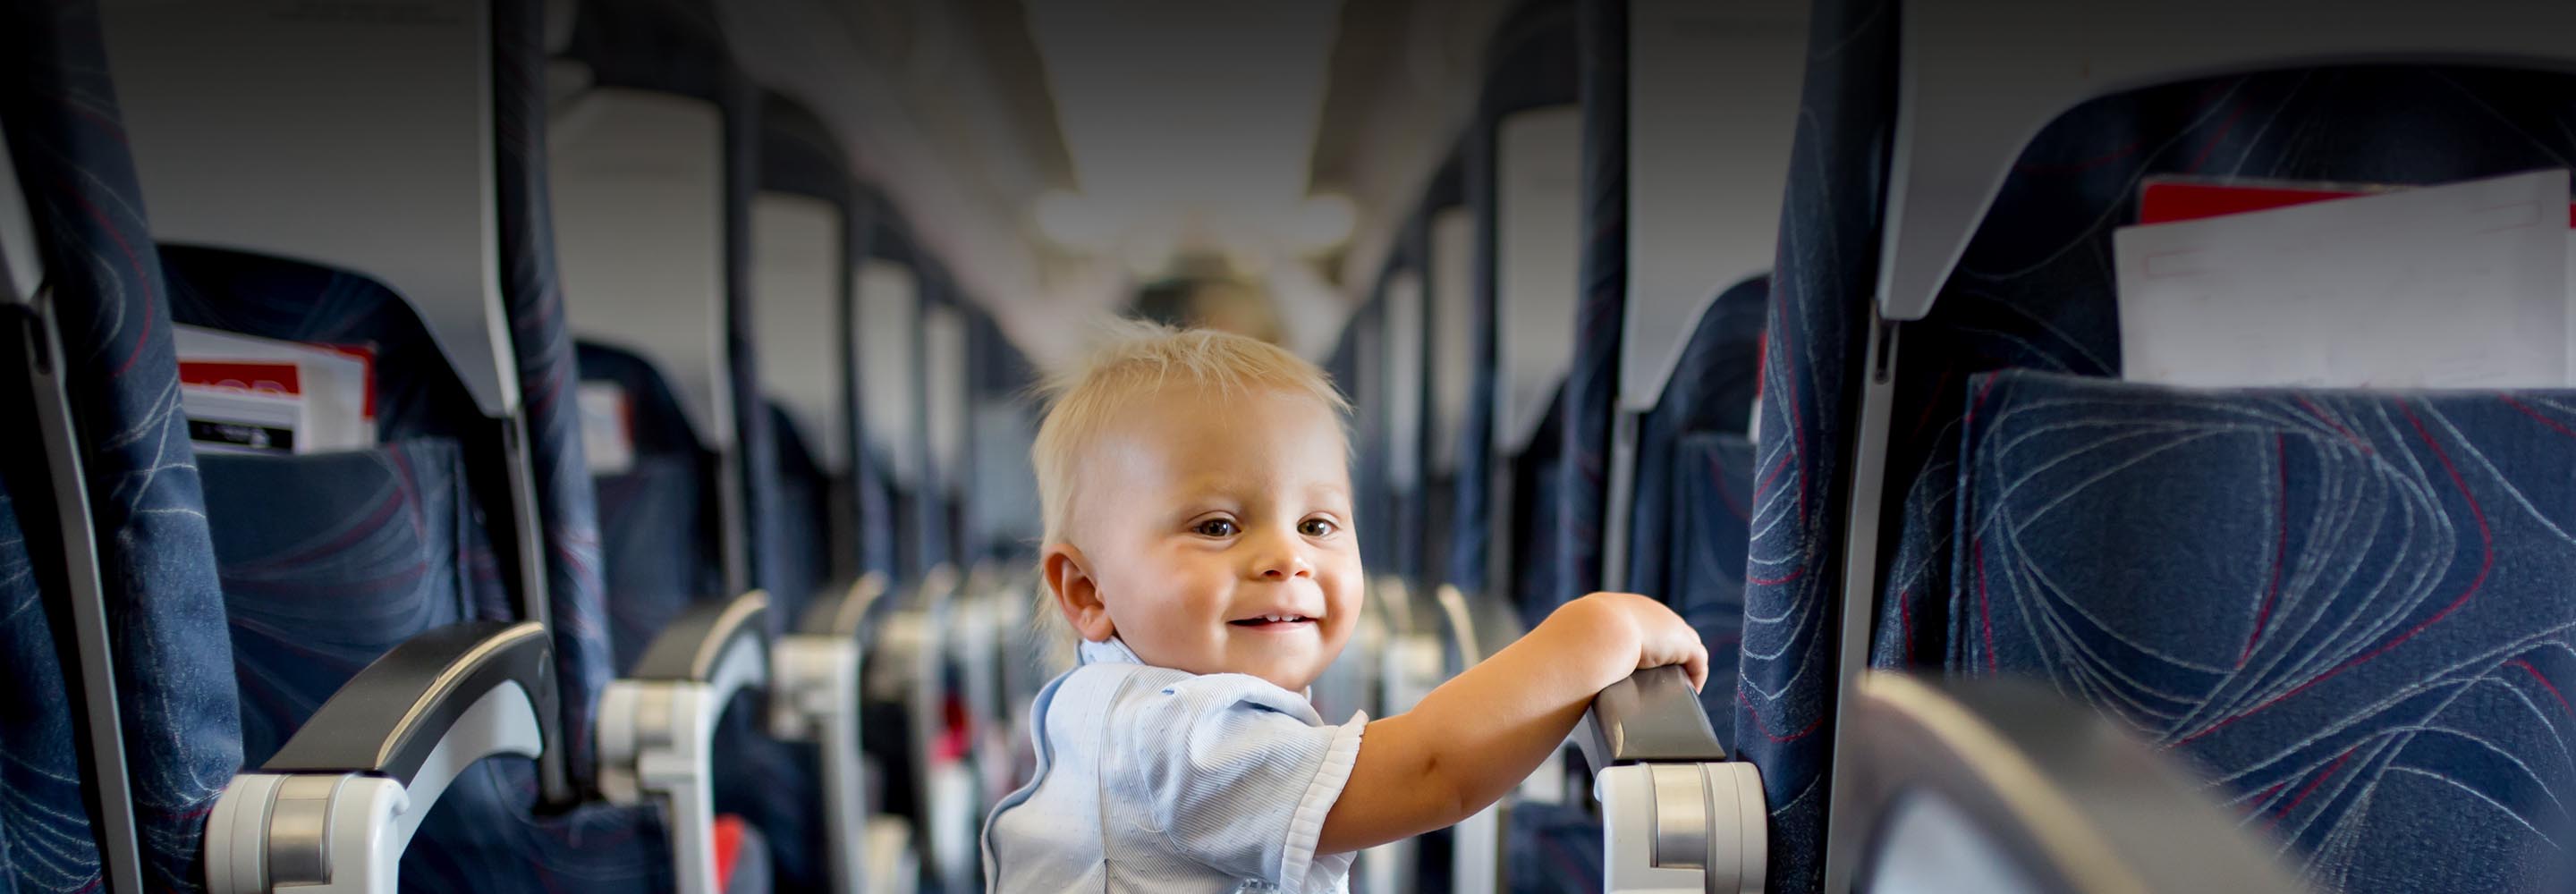 Детский билет на самолет и другие правила перевозки у российских авиакомпаний